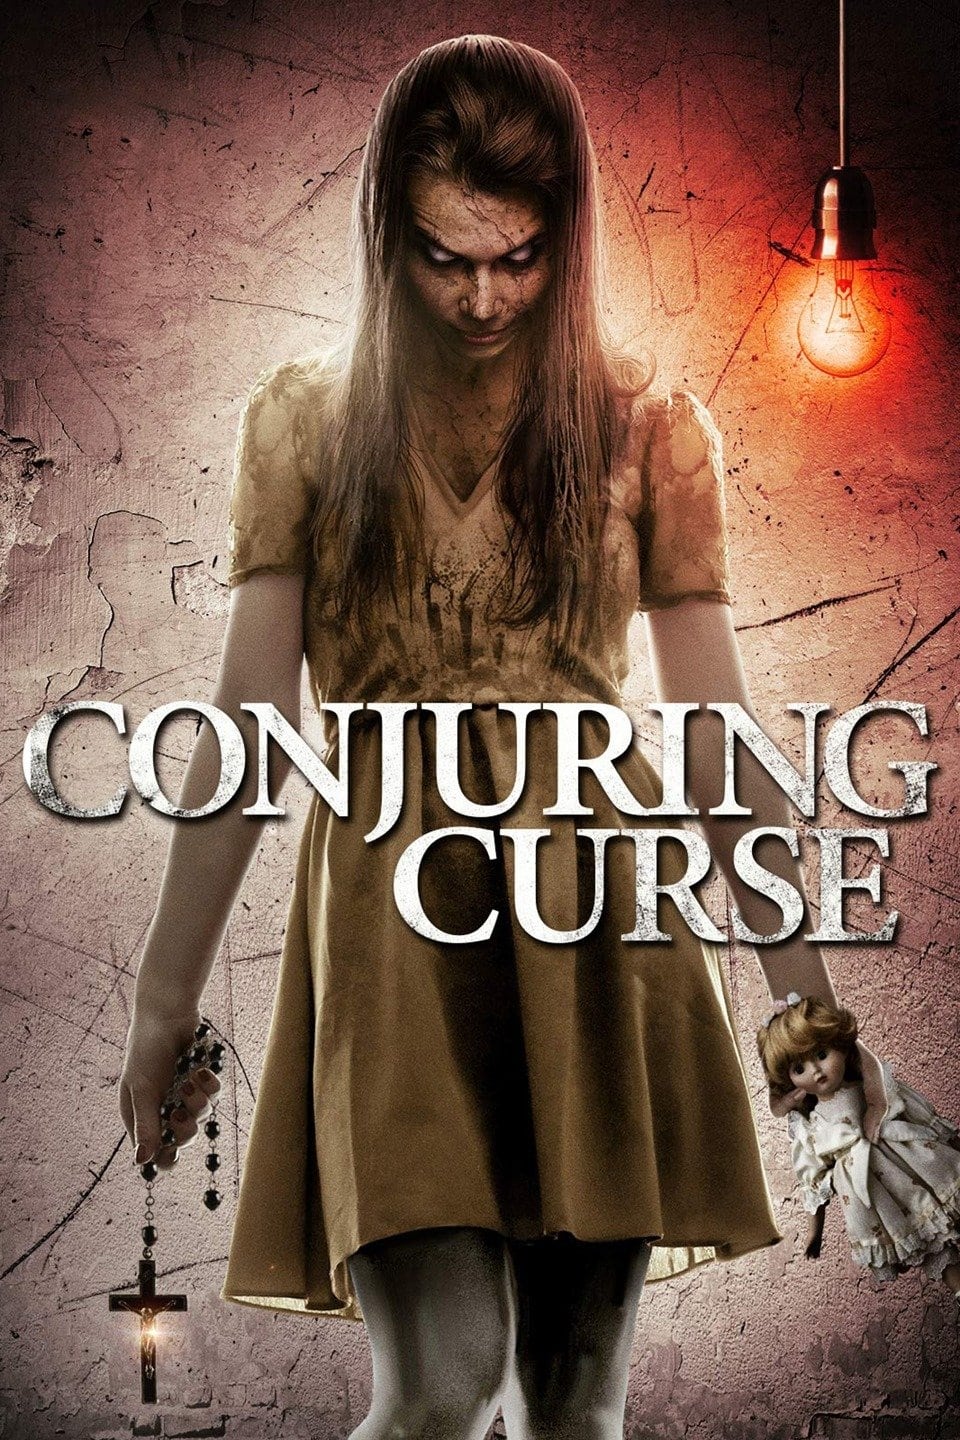 Conjuring Curse